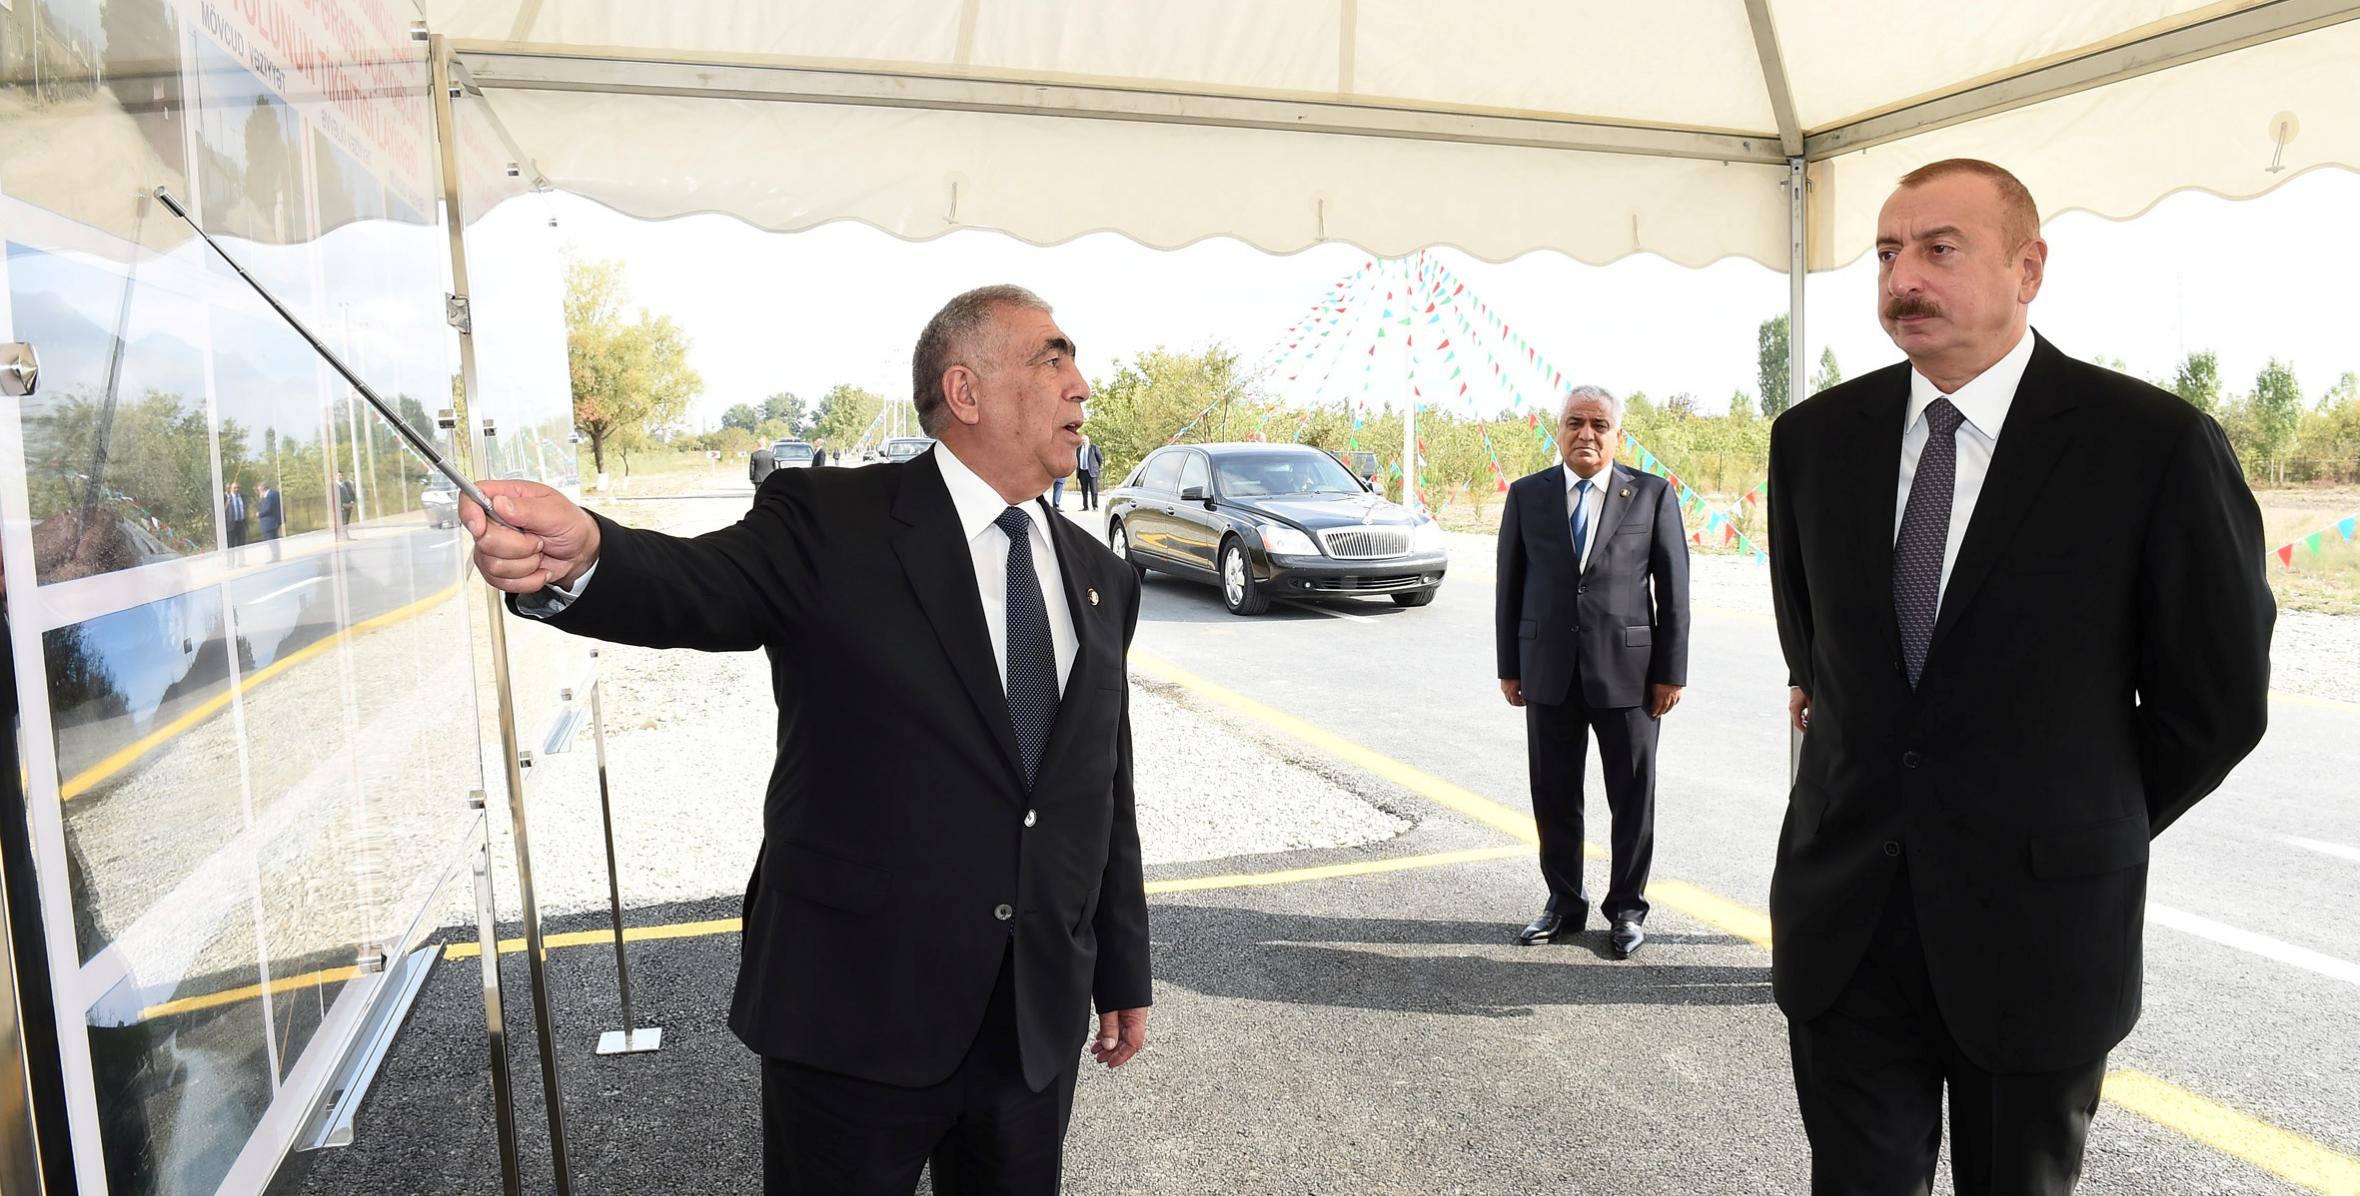 Ilham Aliyev inaugurated Idrisgishlag-Gasimgishlag-Khaspolad-Zargava-Asparasti-Chaygishlag highway in Guba